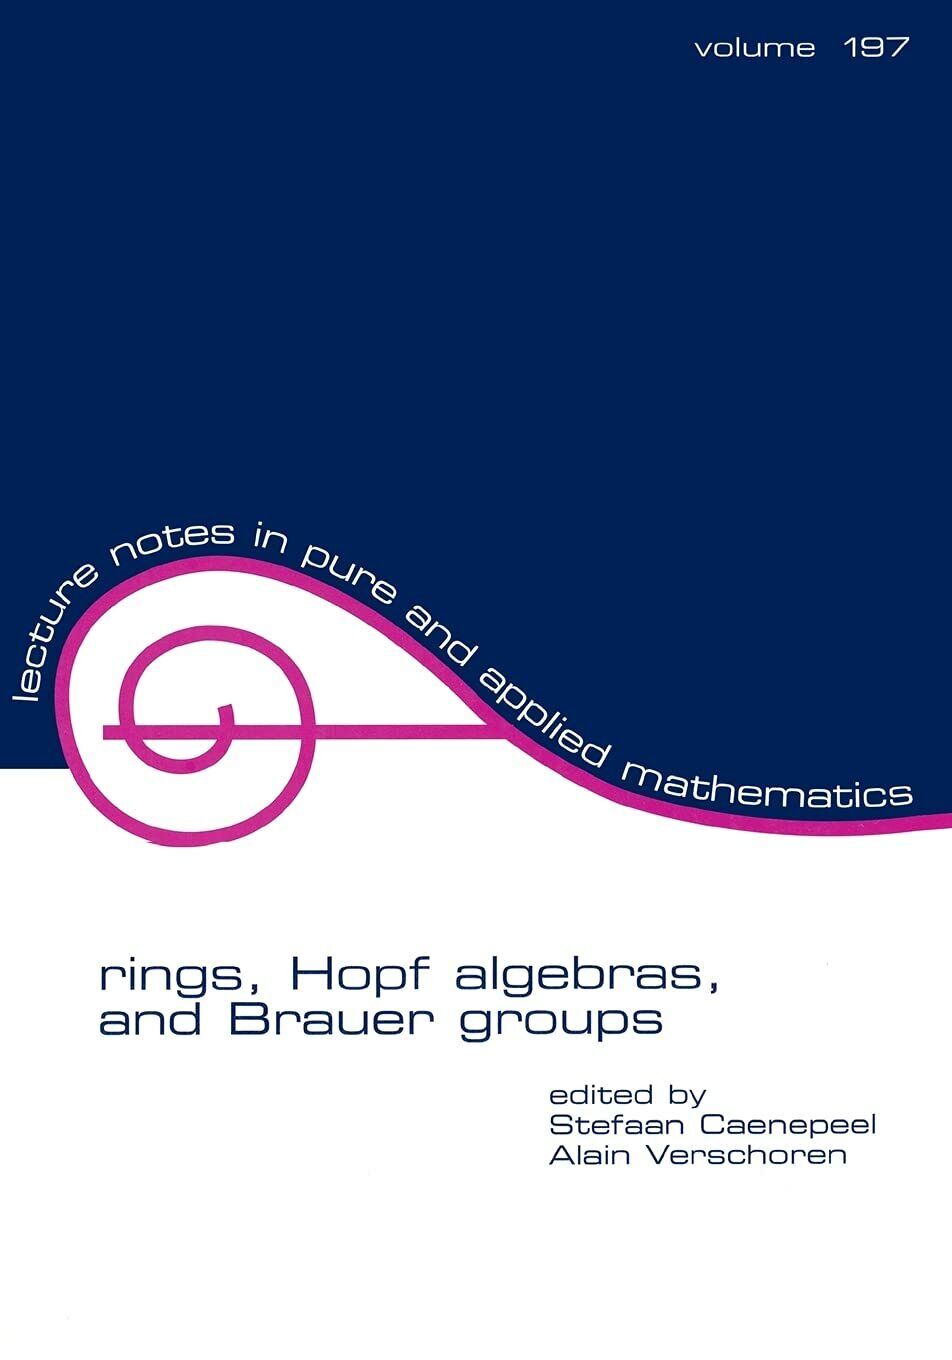 Rings, Hopf Algebras, and Brauer Groups (Volume 197) - Stefaan Caenepeel - 1998